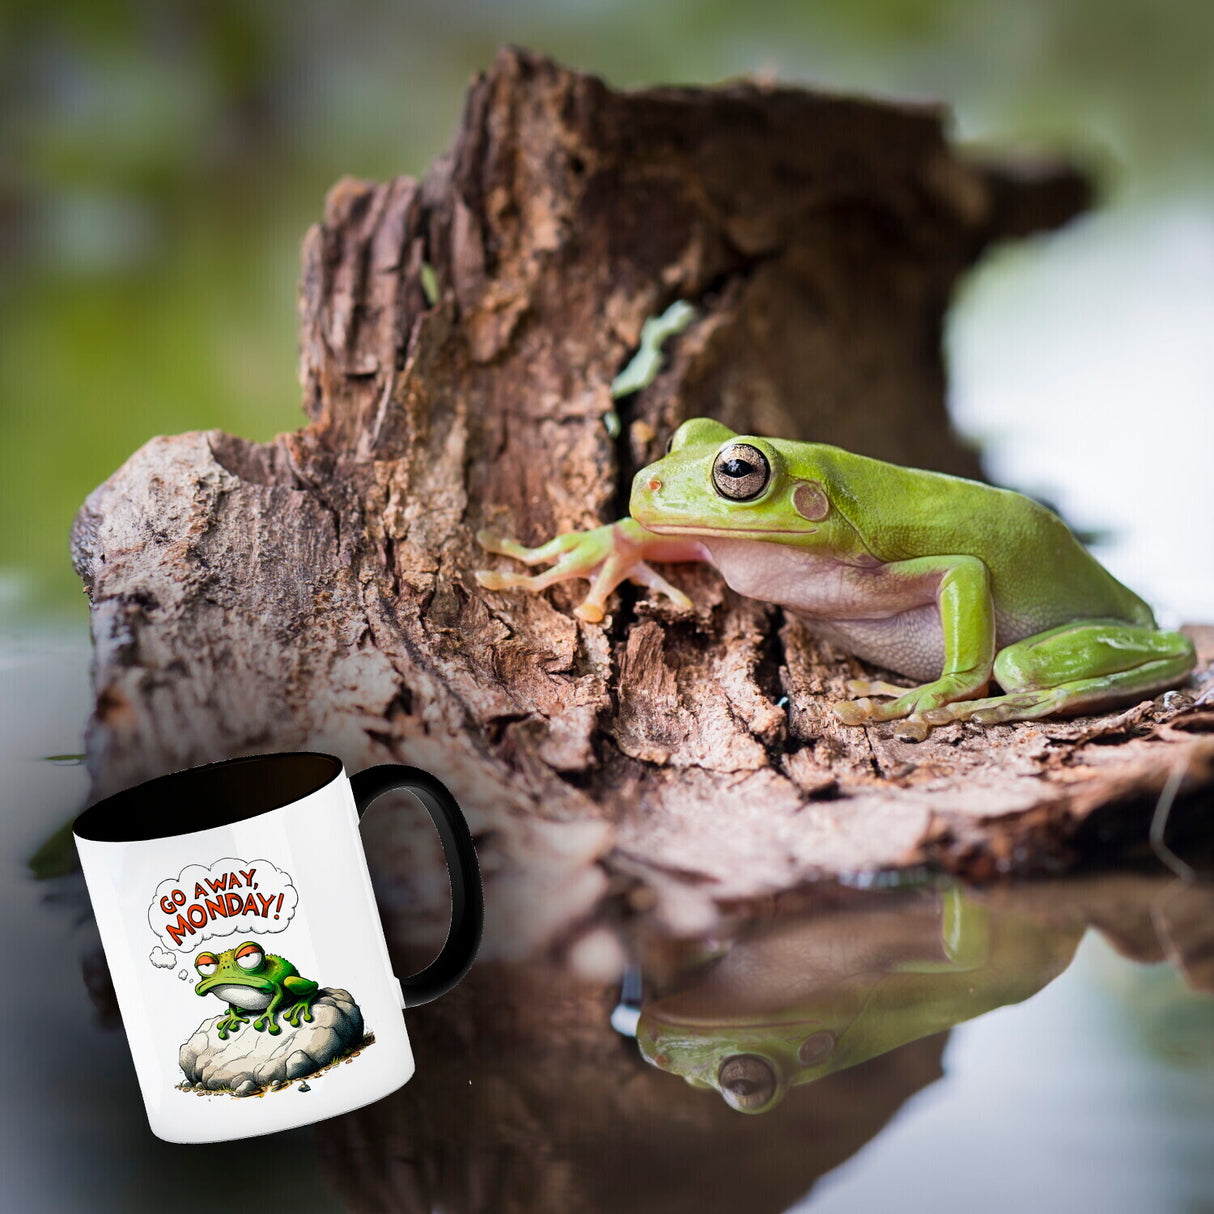 Mürrischer Frosch auf Stein Kaffeebecher mit Spruch Go away, Monday!